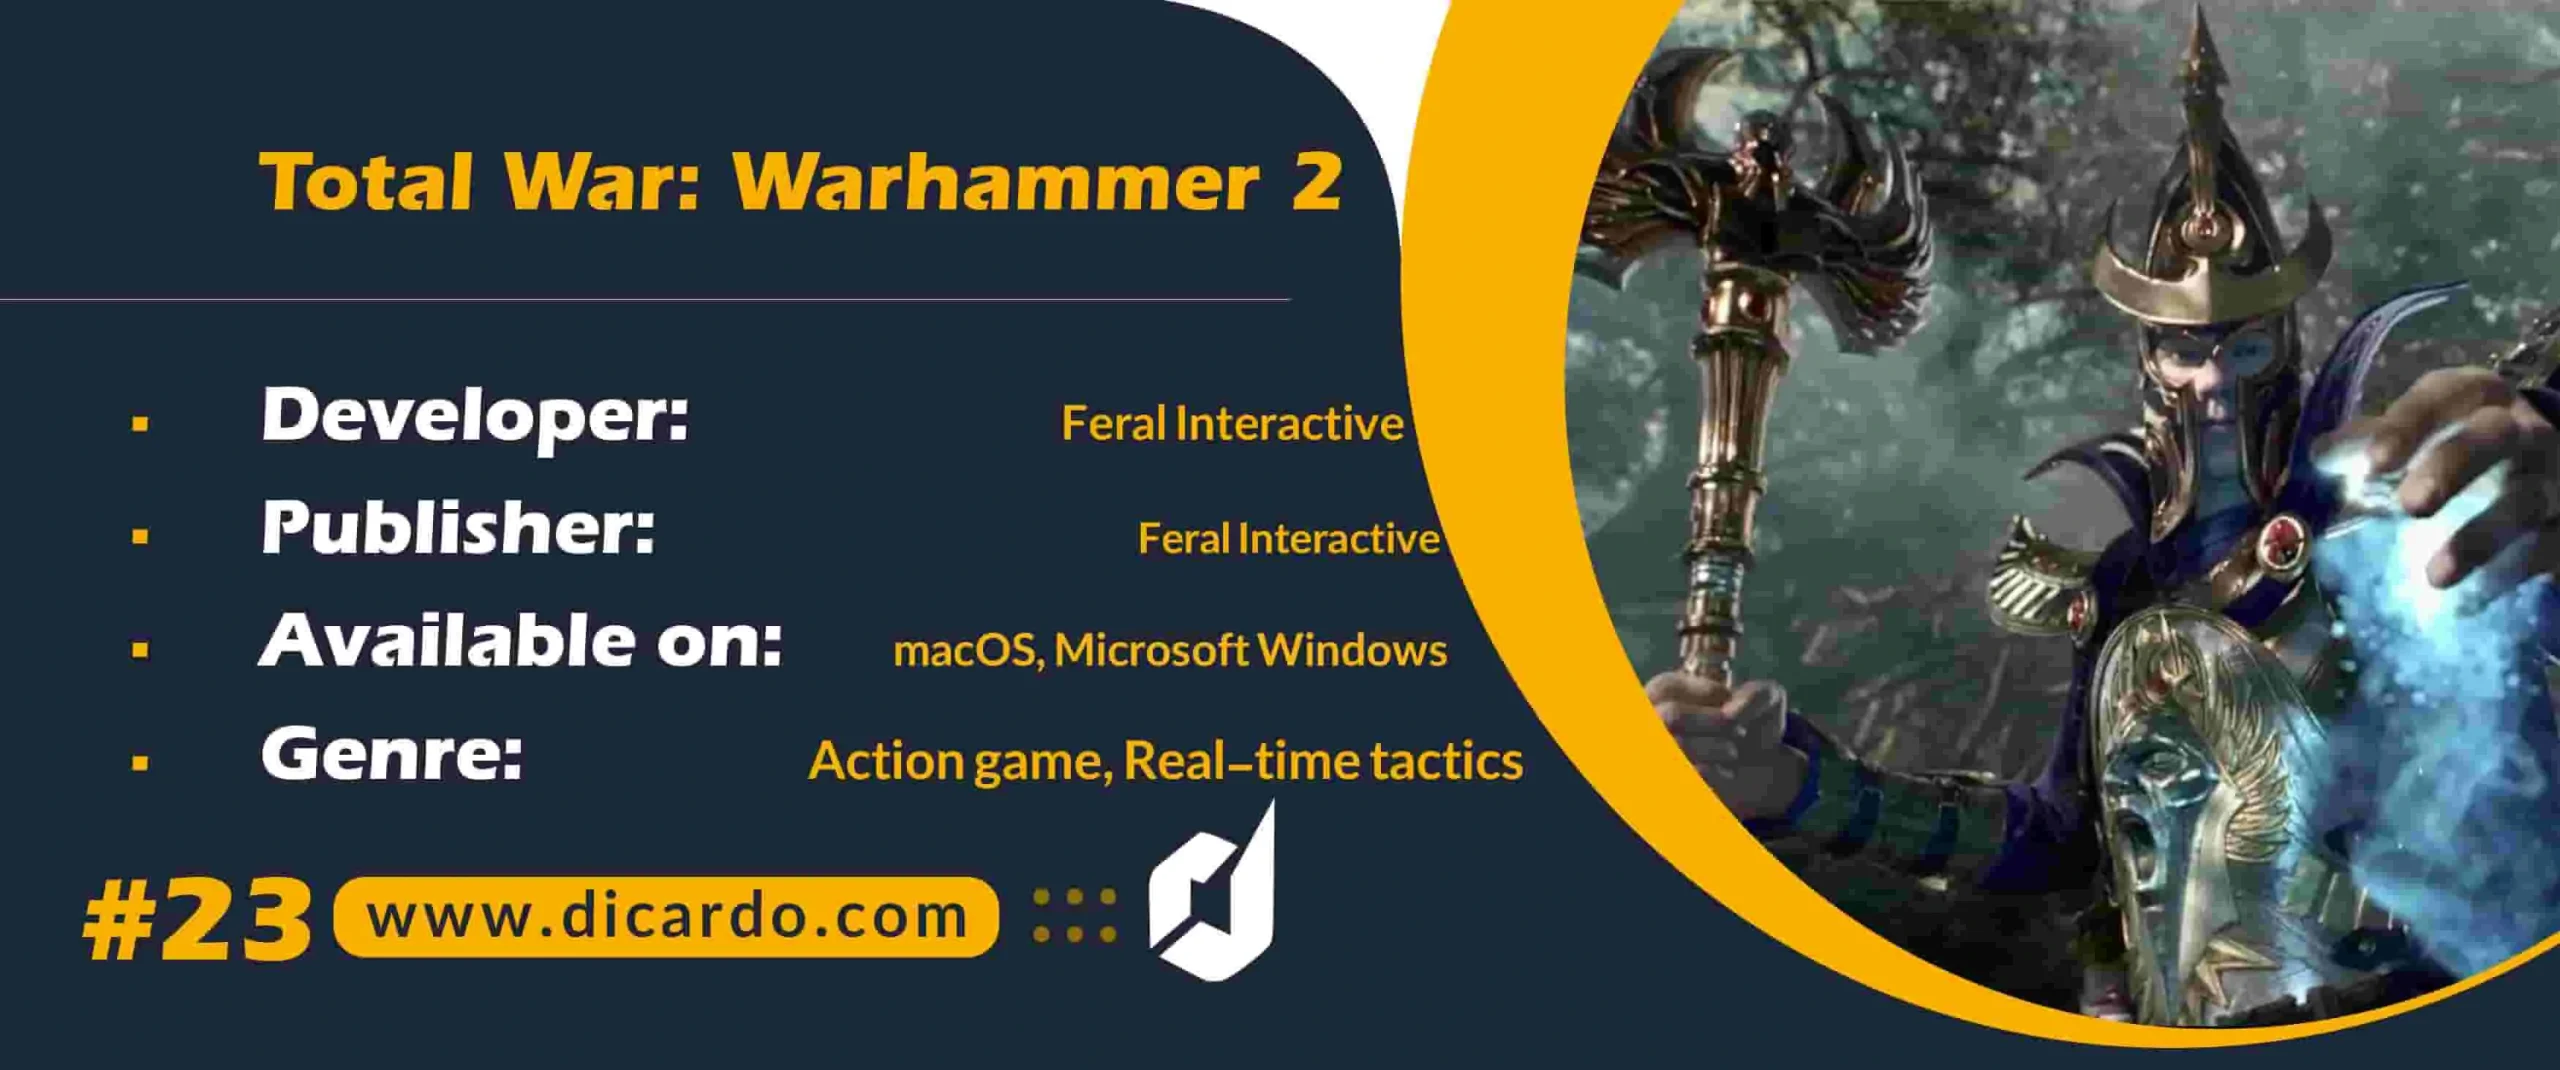 #23 توتال وارهیمر 2 Total War: Warhammer 2 از برترین بازیهای کامپیوتری منتشر شده توسط سگا